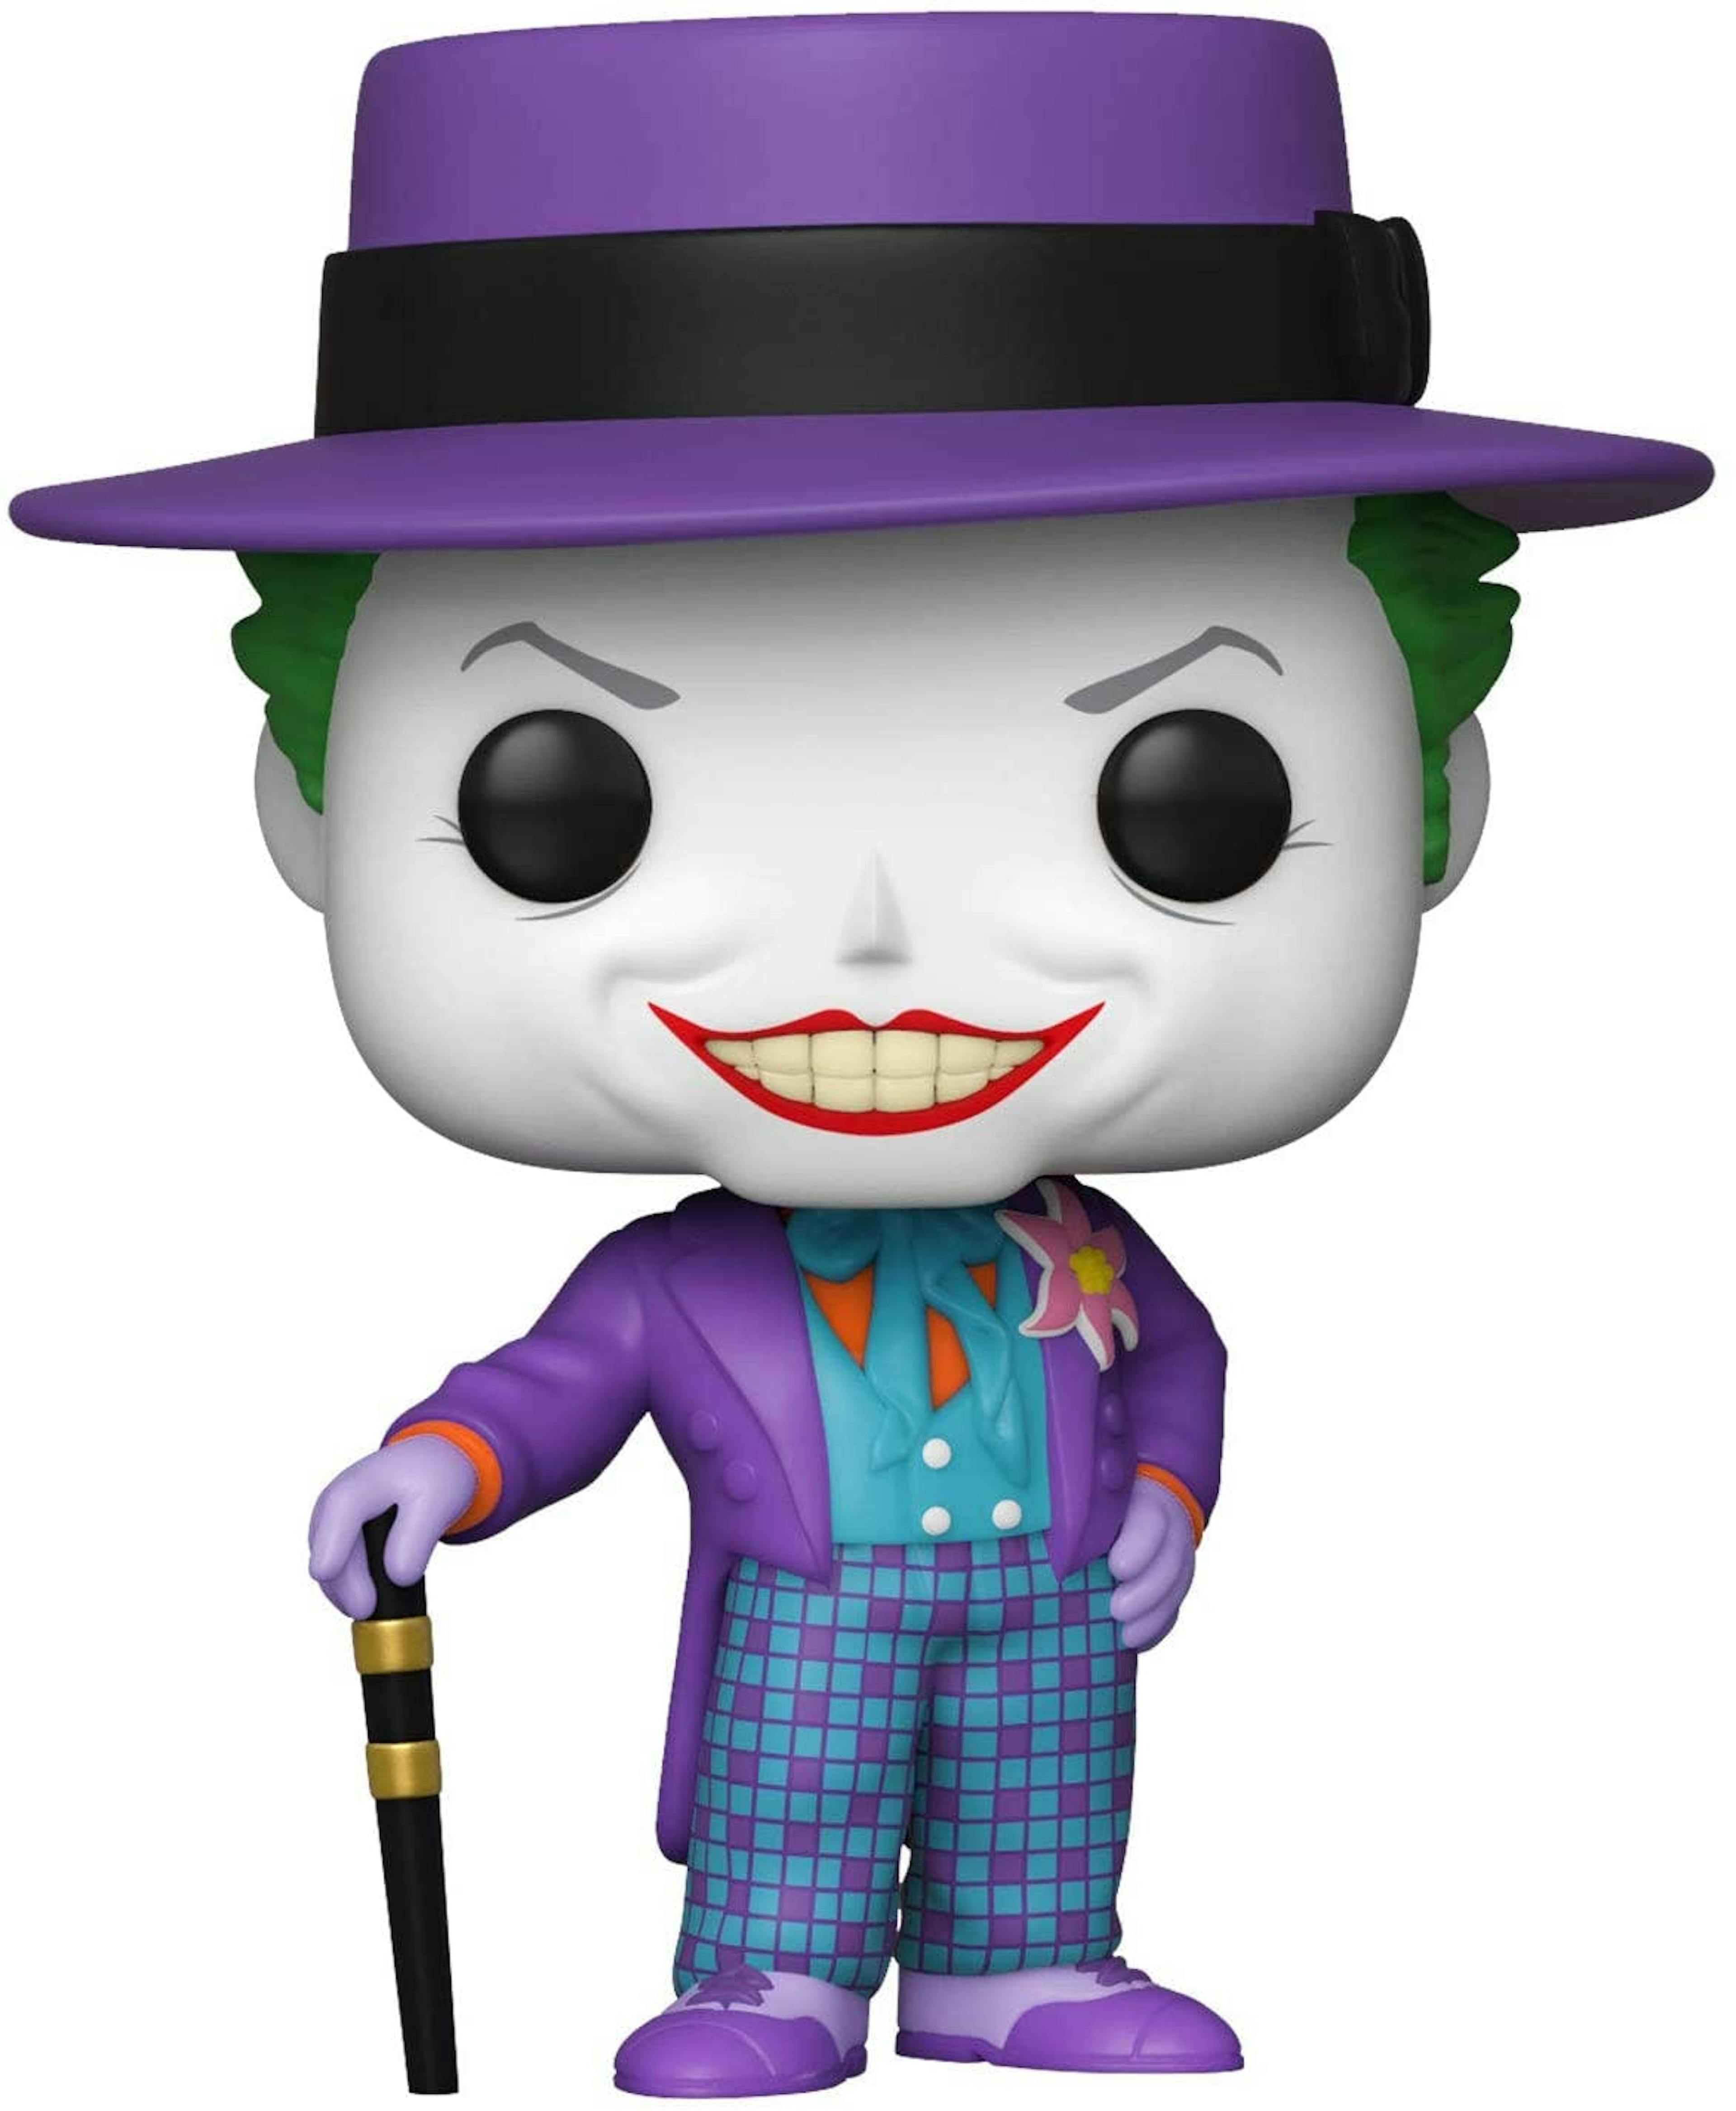 Joker as funko pop